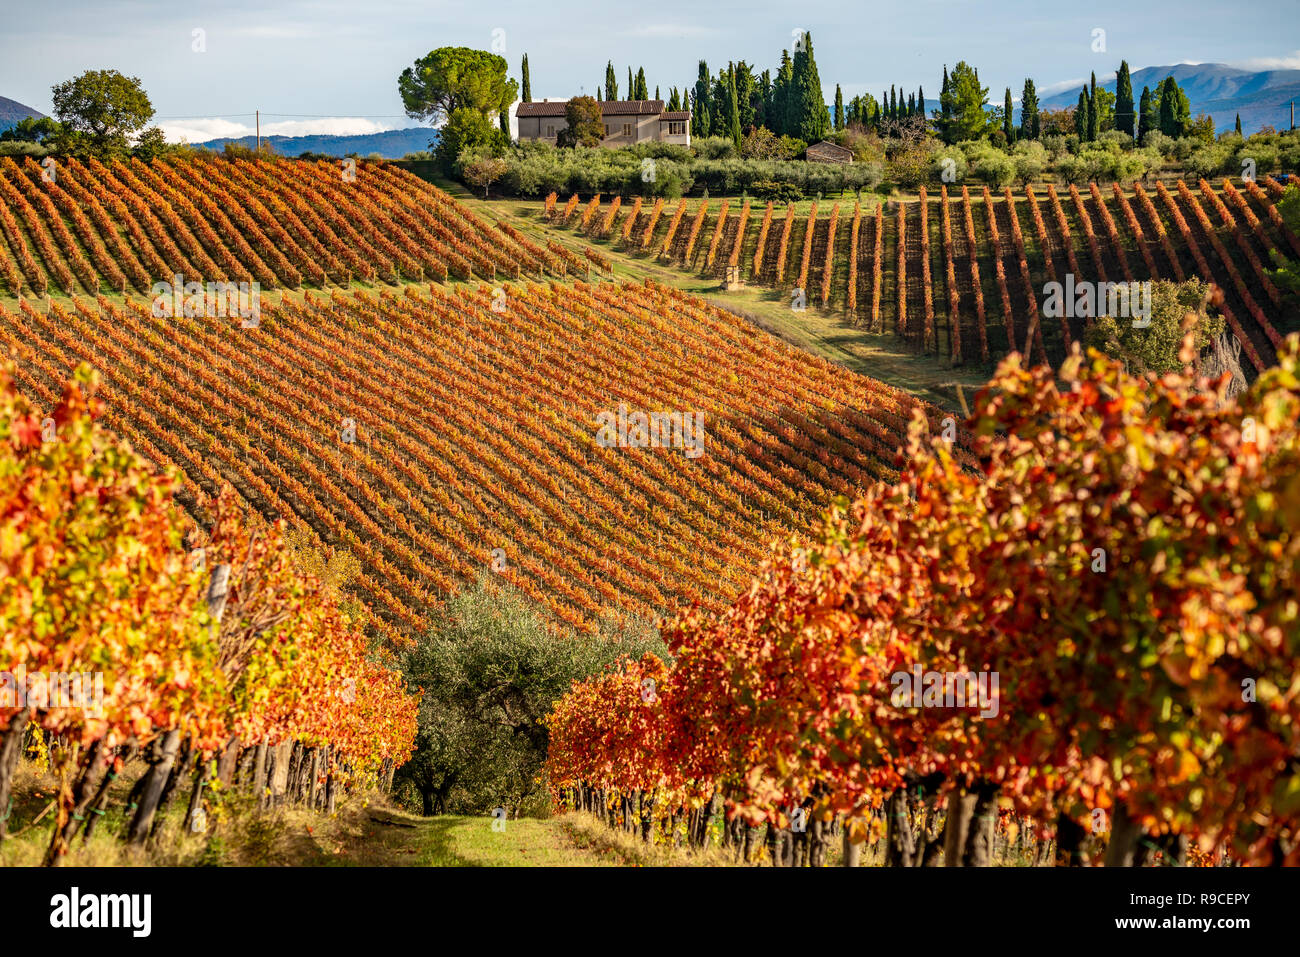 Sagrentino vignobles de l'Ombrie, près de Montefalco. L'Italie. Couleurs d'automne Banque D'Images